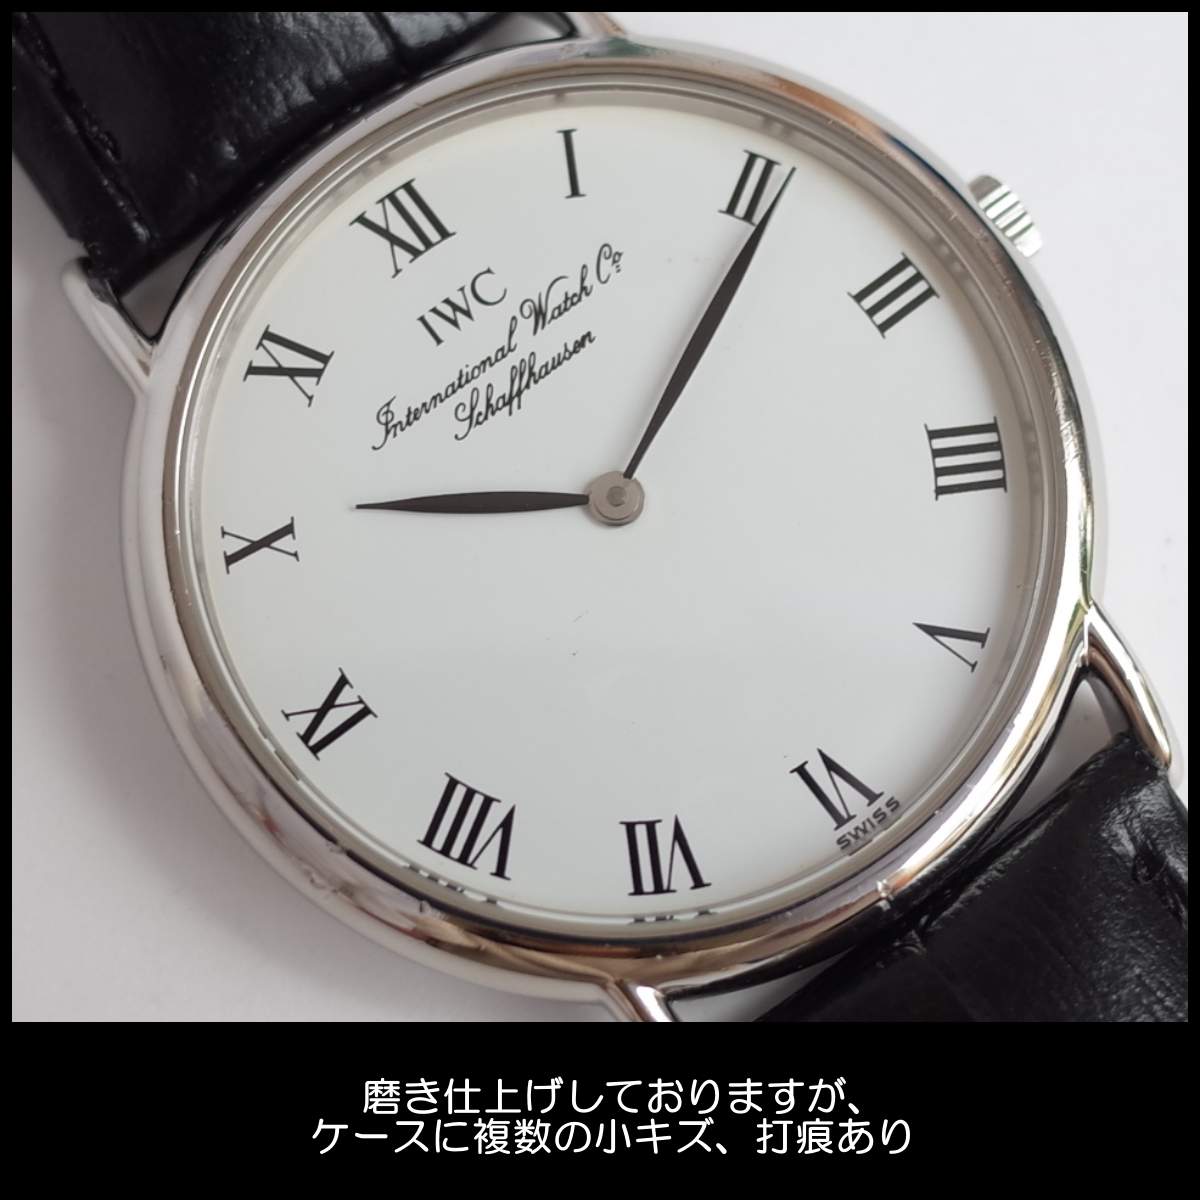 IWC ポートフィノ 筆記体 OH済み - 腕時計(アナログ)